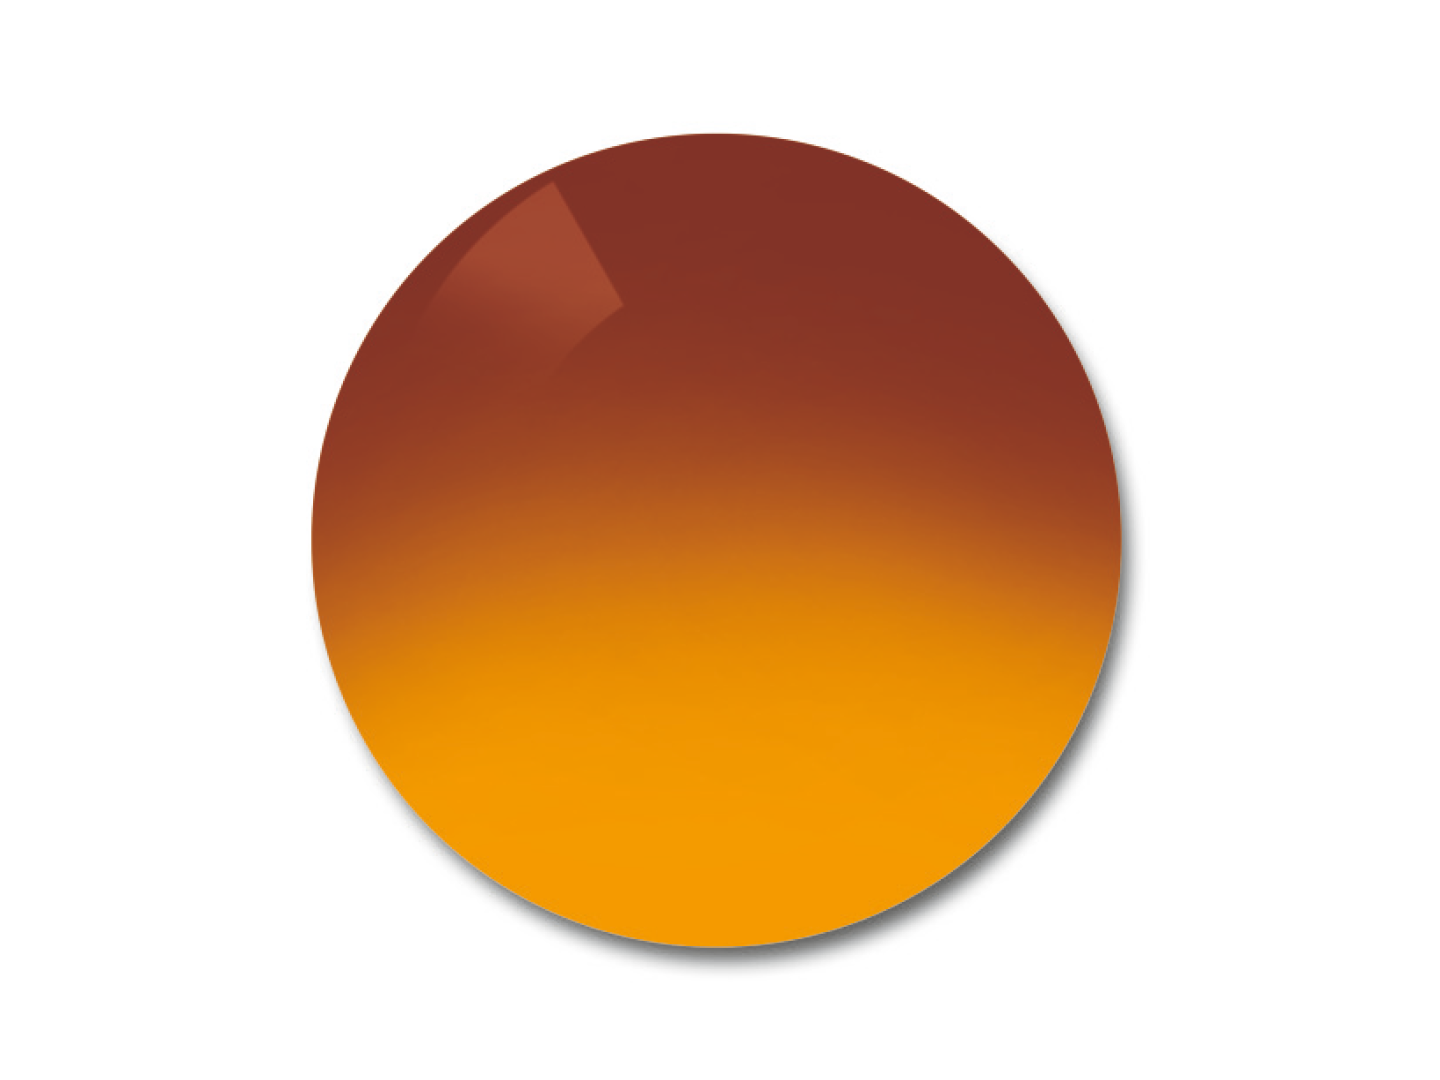 Příklad odstínu čoček ProGolf Gradient 75/25 %, který je vhodný do špatné viditelnosti. 